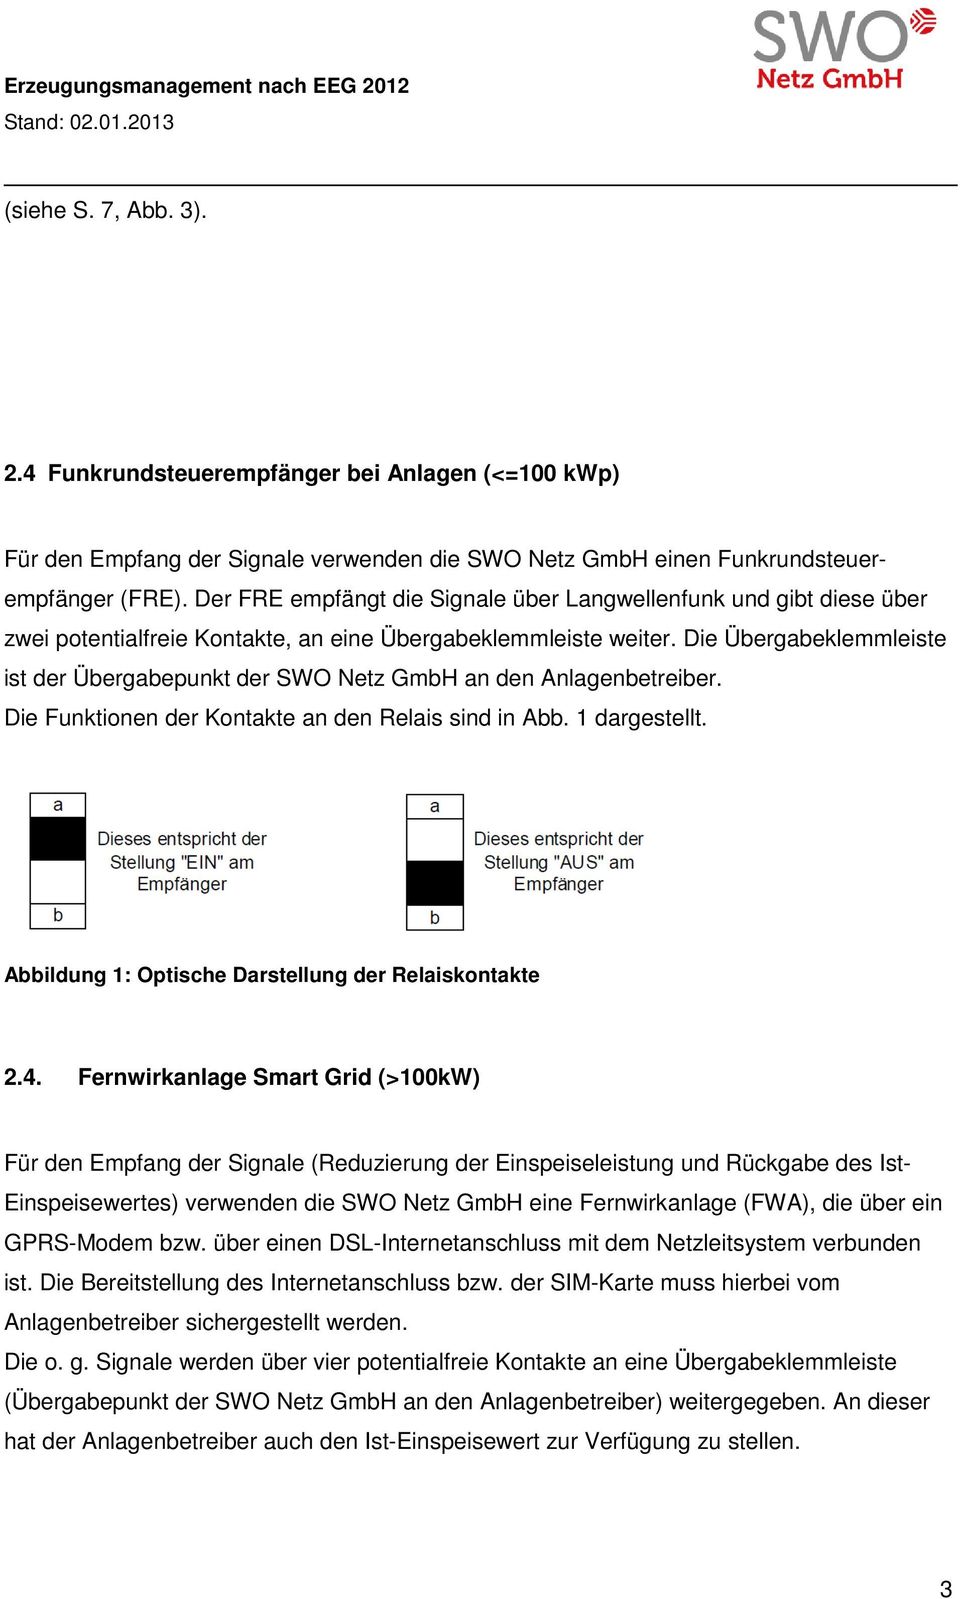 Die Übergabeklemmleiste ist der Übergabepunkt der SWO Netz GmbH an den Anlagenbetreiber. Die Funktionen der Kontakte an den Relais sind in Abb. 1 dargestellt.